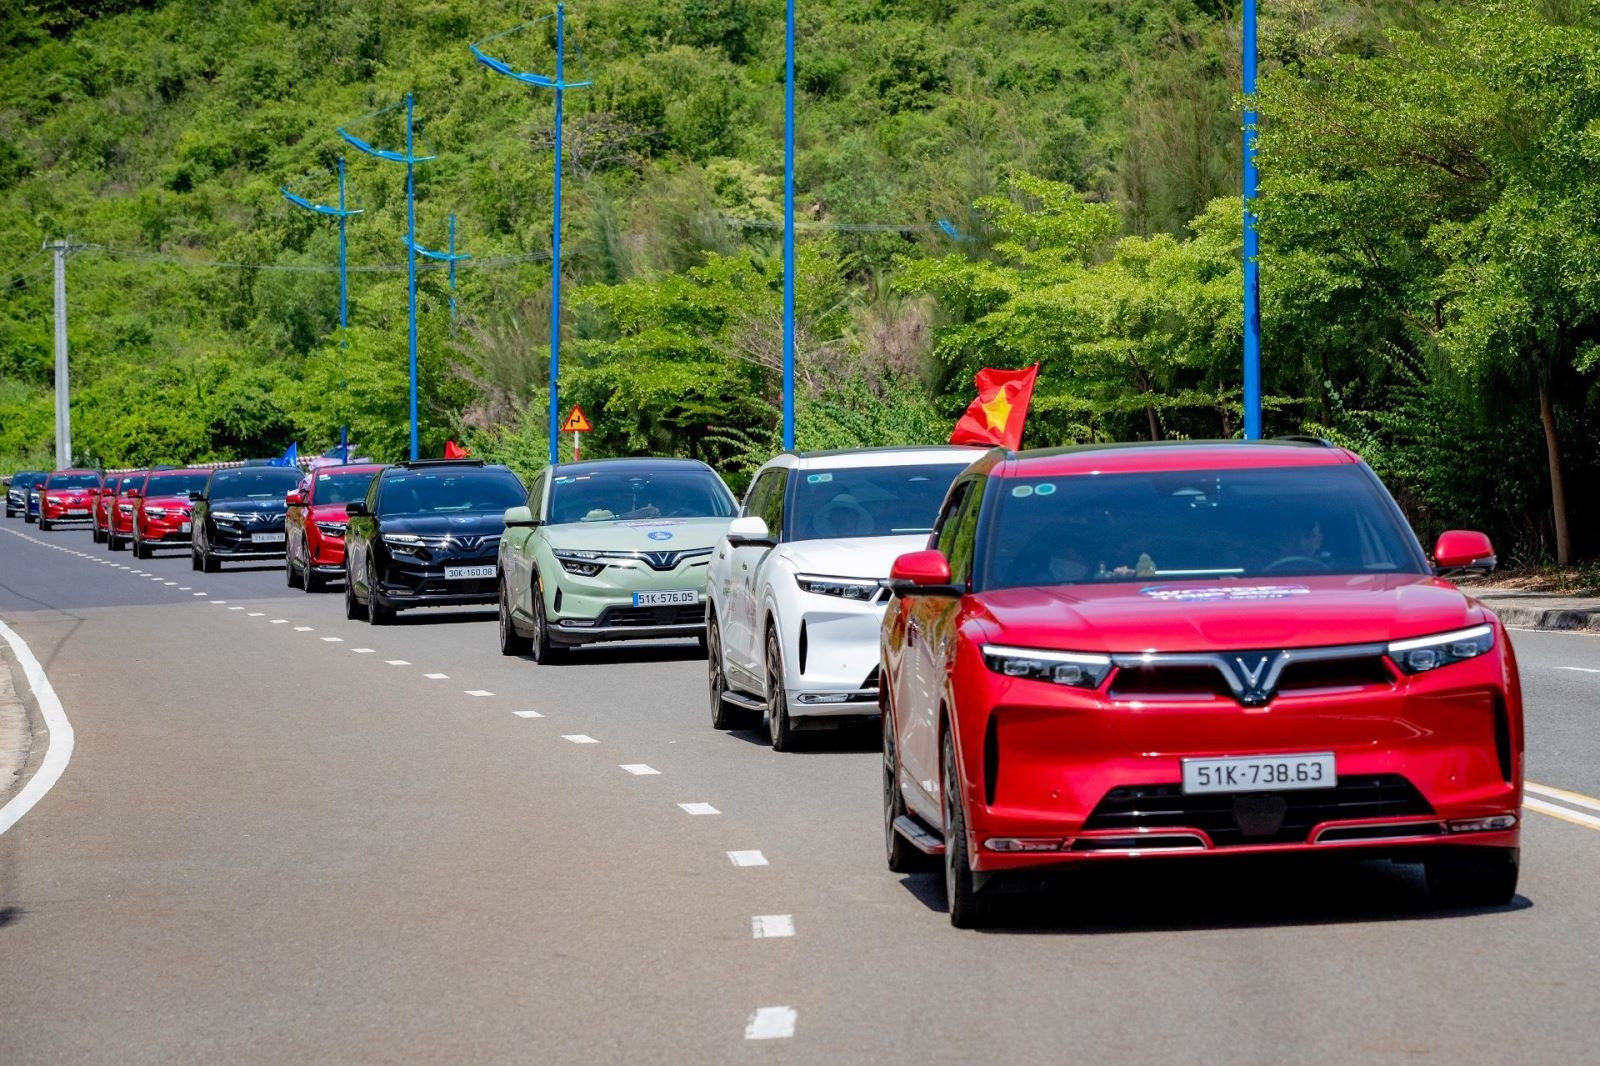 Xanh SM chính thức thành nền tảng gọi xe: Bắt tay chủ xe điện mở rộng quy mô đội xe, chia sẻ doanh thu tối đa 80%- Ảnh 1.